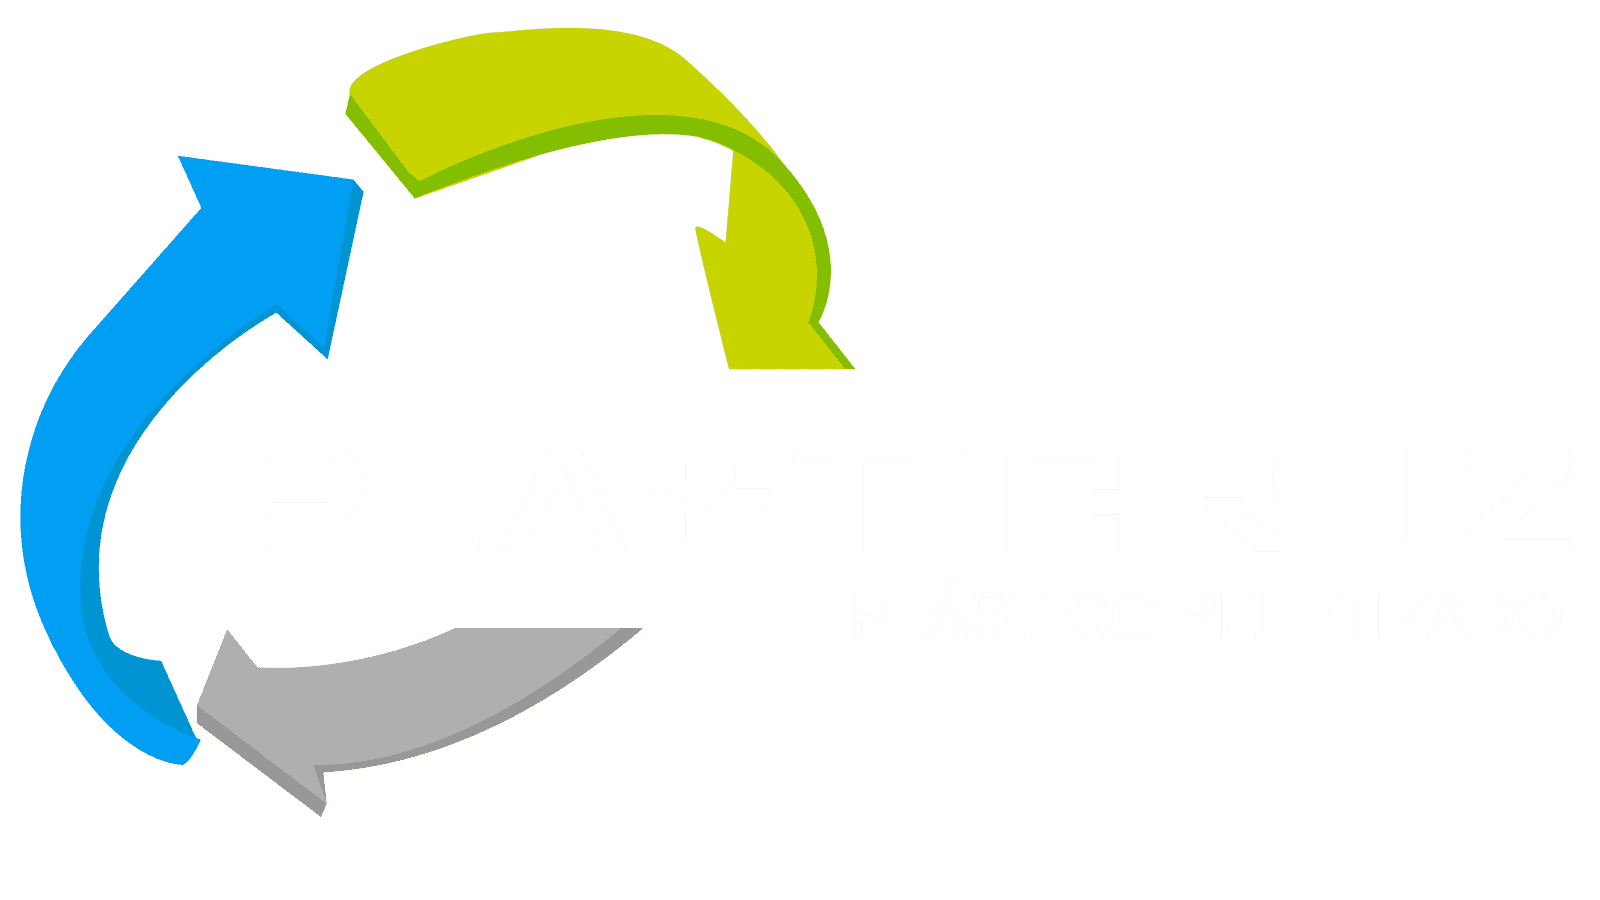 Plástico peletizado reciclado